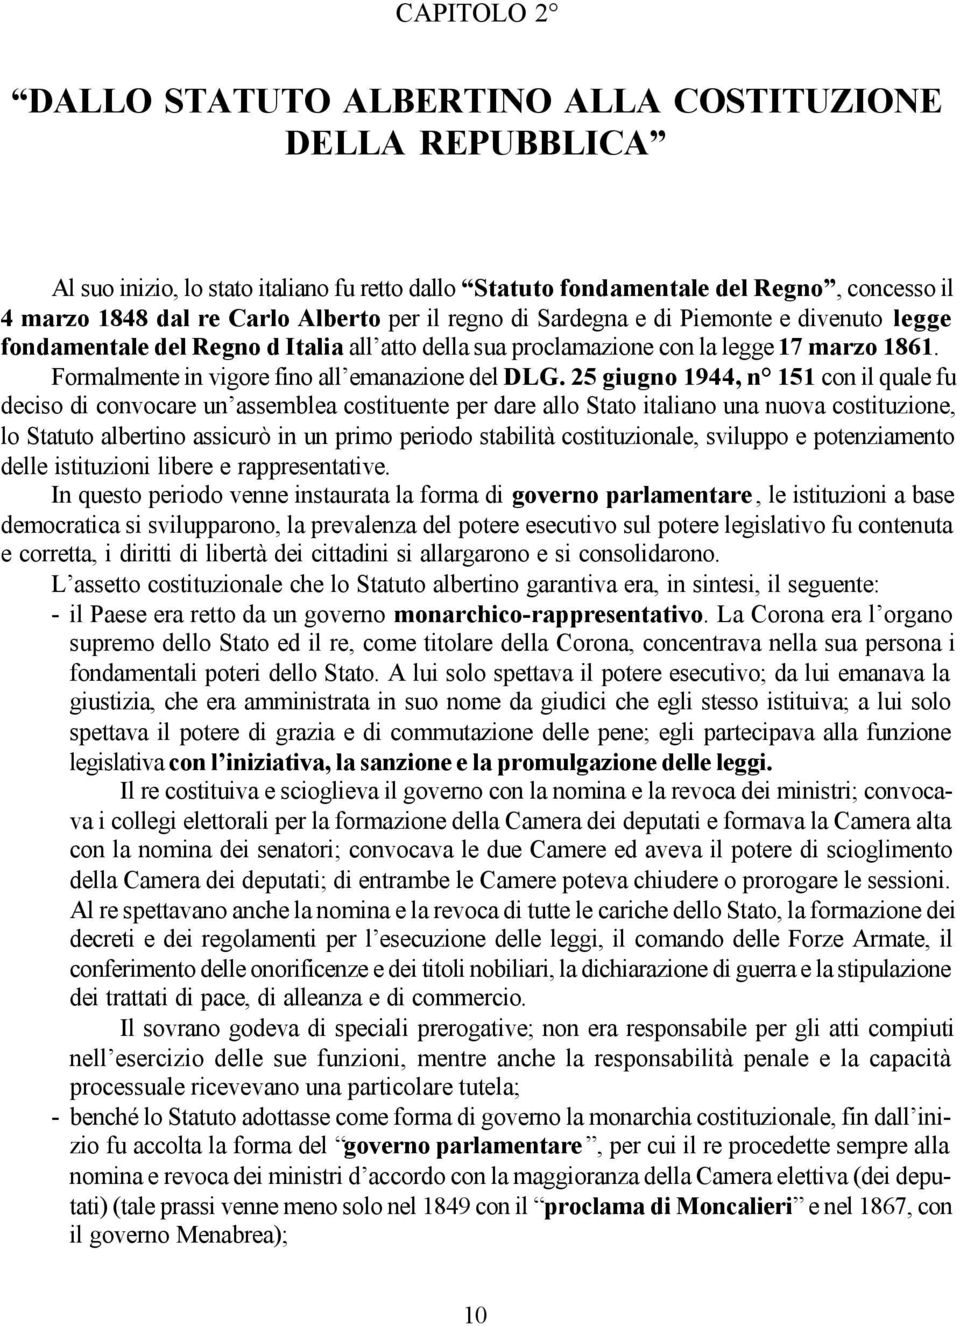 25 giugno 1944, n 151 con il quale fu deciso di convocare un assemblea costituente per dare allo Stato italiano una nuova costituzione, lo Statuto albertino assicurò in un primo periodo stabilità